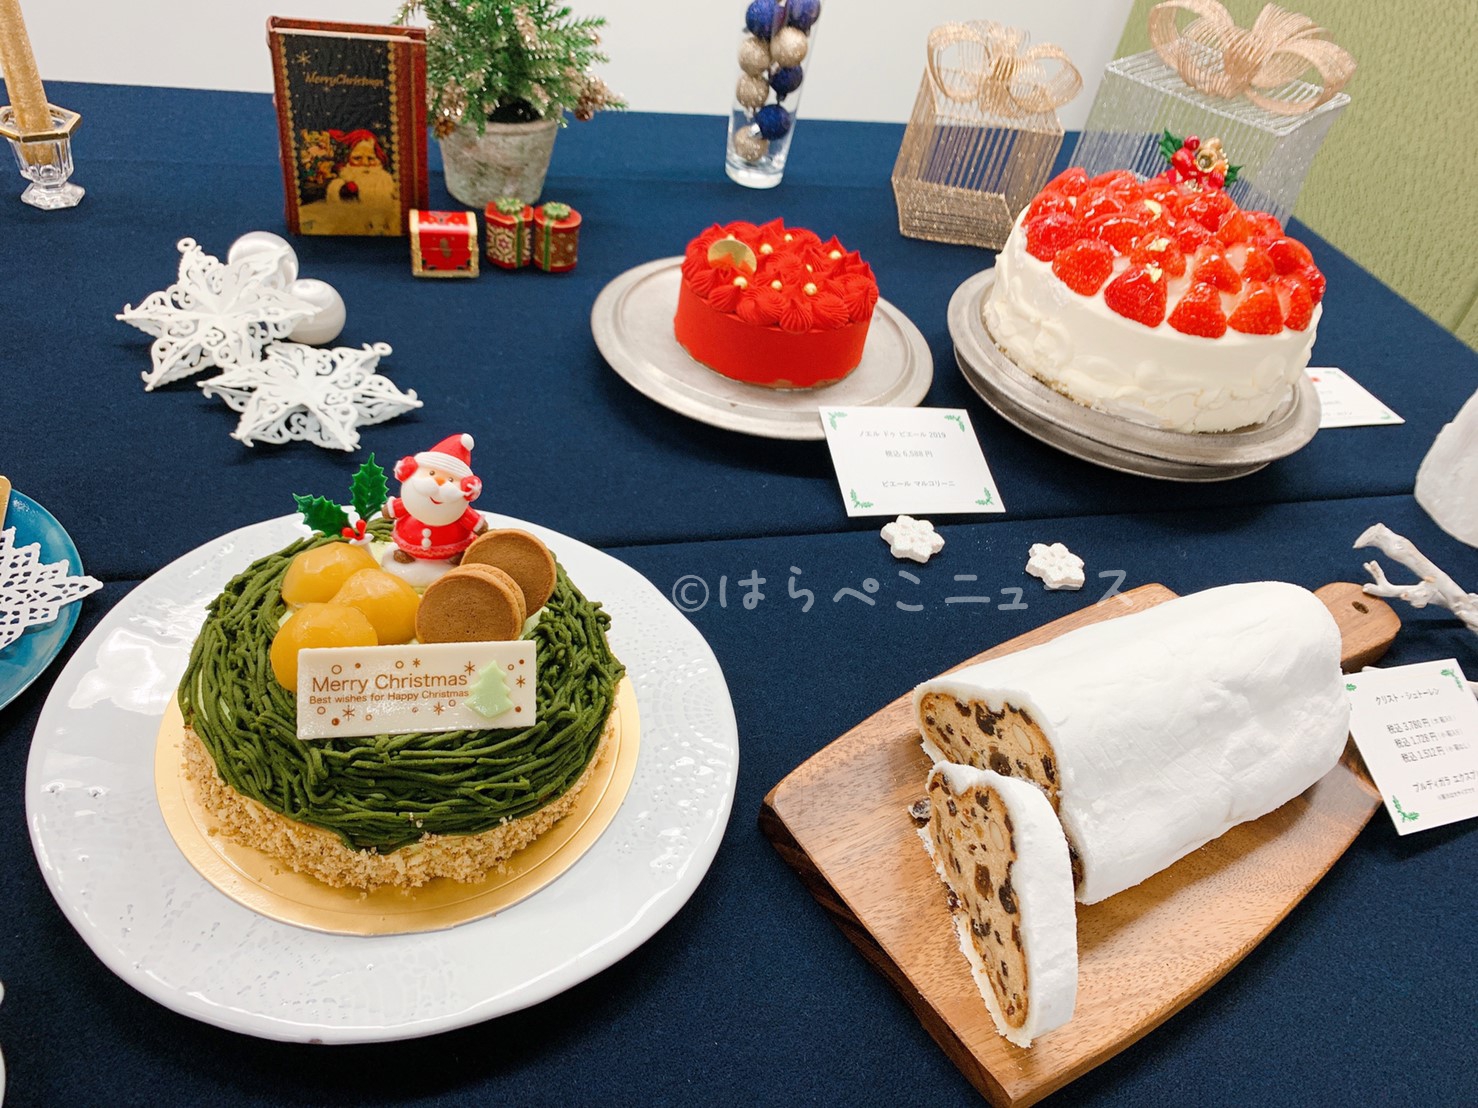 打たれたトラック 医薬 タービン クリスマス ケーキ ネット 通販 Youkan Jp